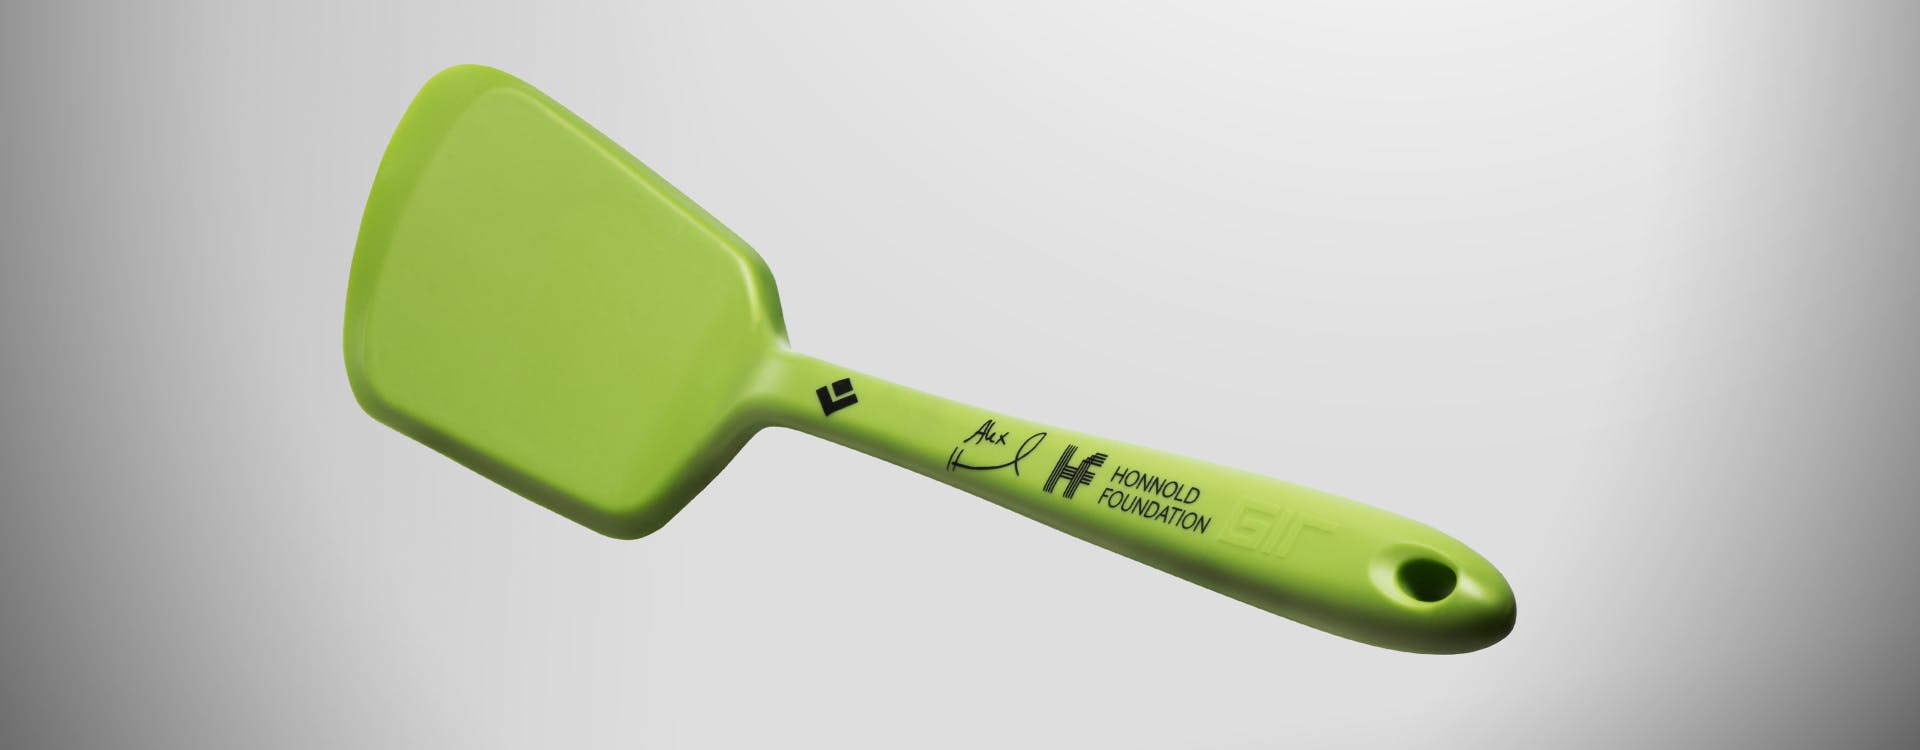 The Honnold signature spatula